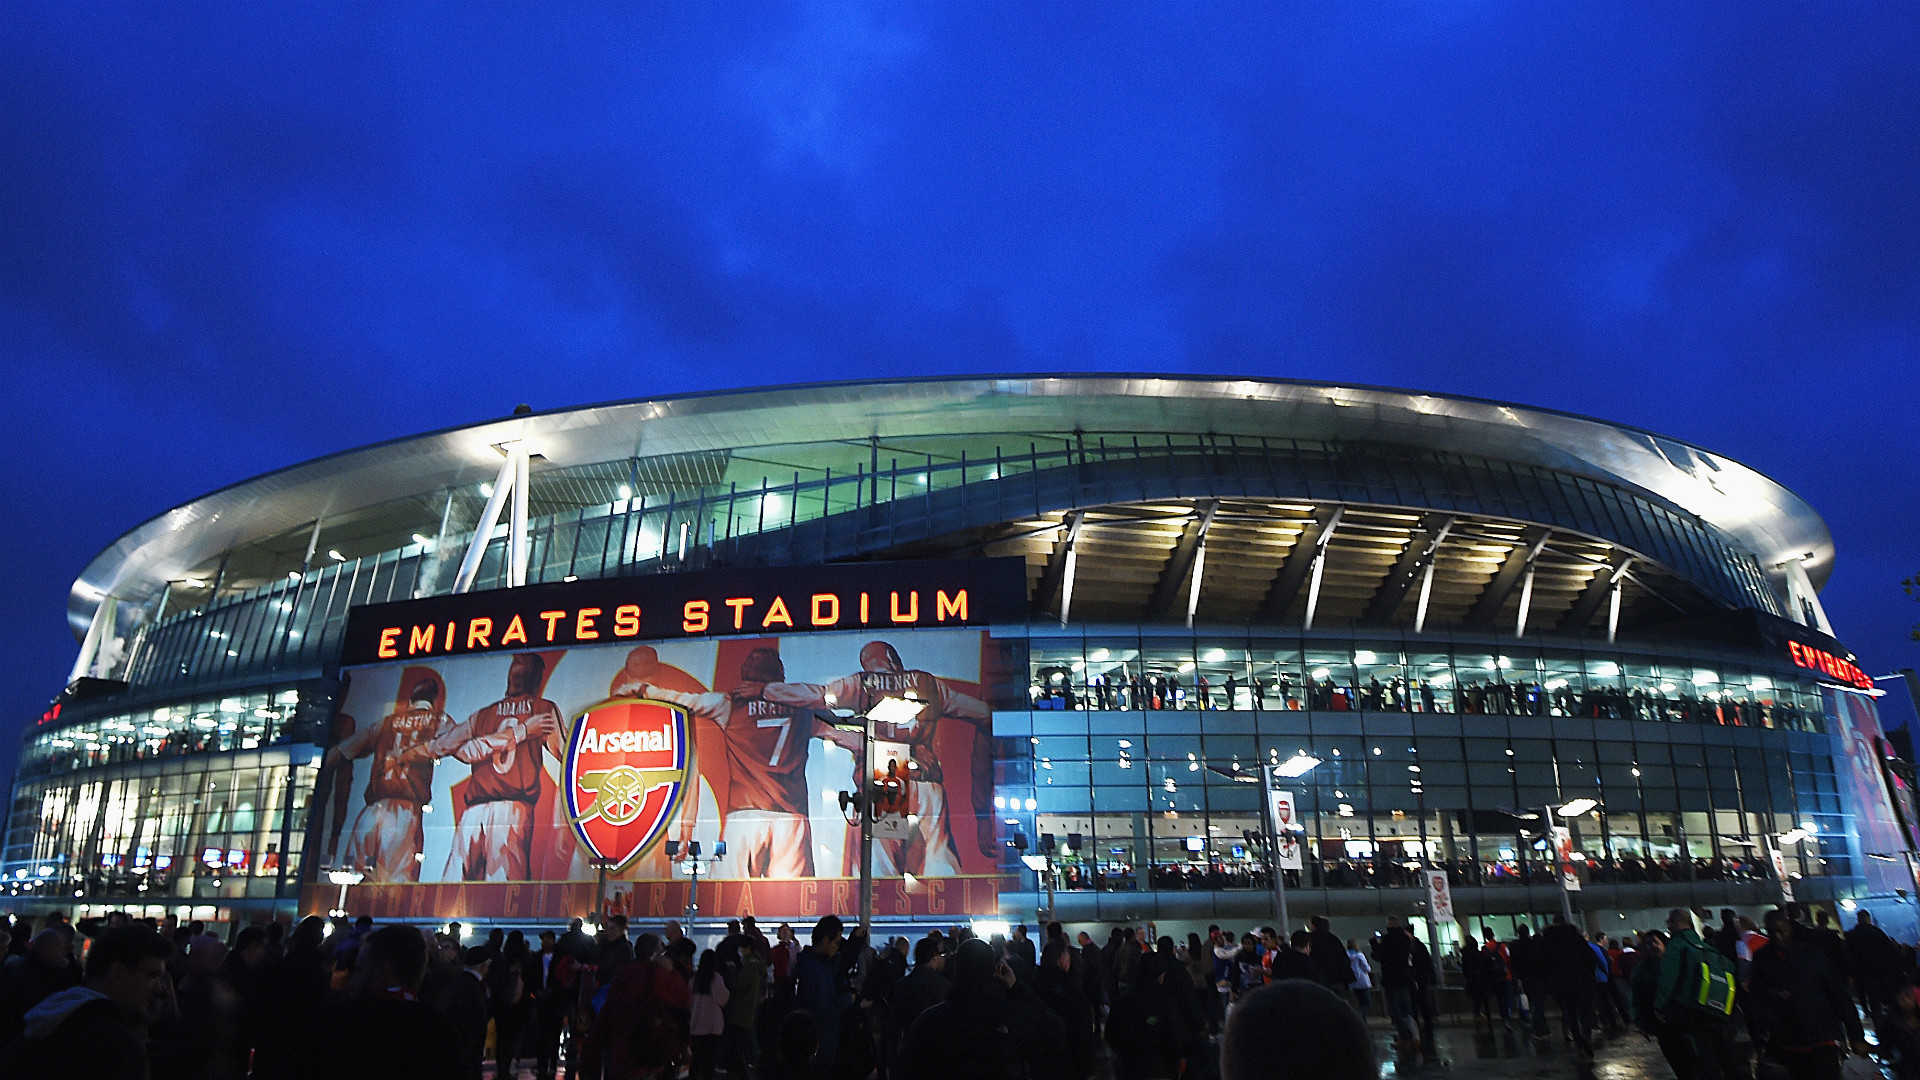 Emirates Stadium | Arsenal - Goal.com